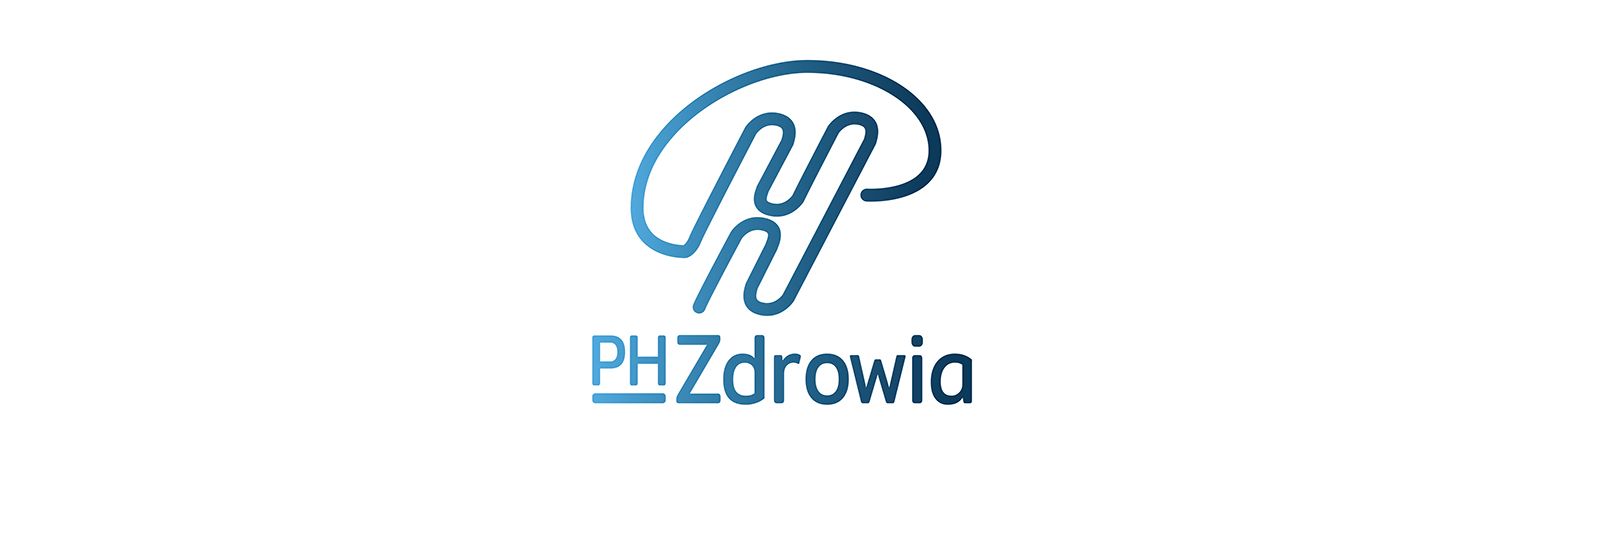 PH Zdrowia, Kraków, ph-zdrowia